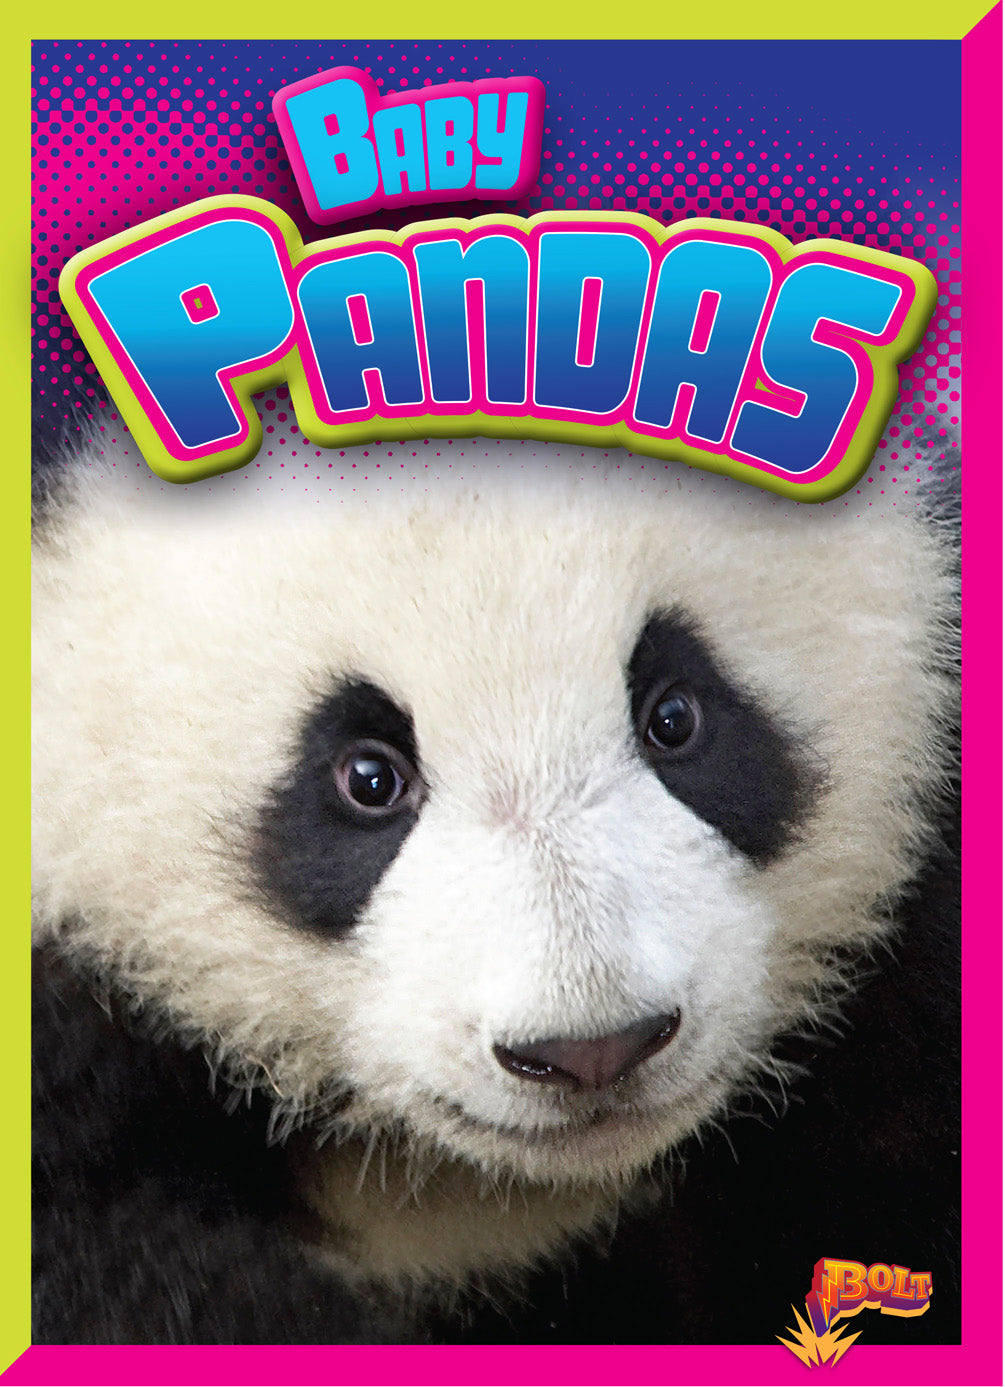 Adorable Animals: Baby Pandas